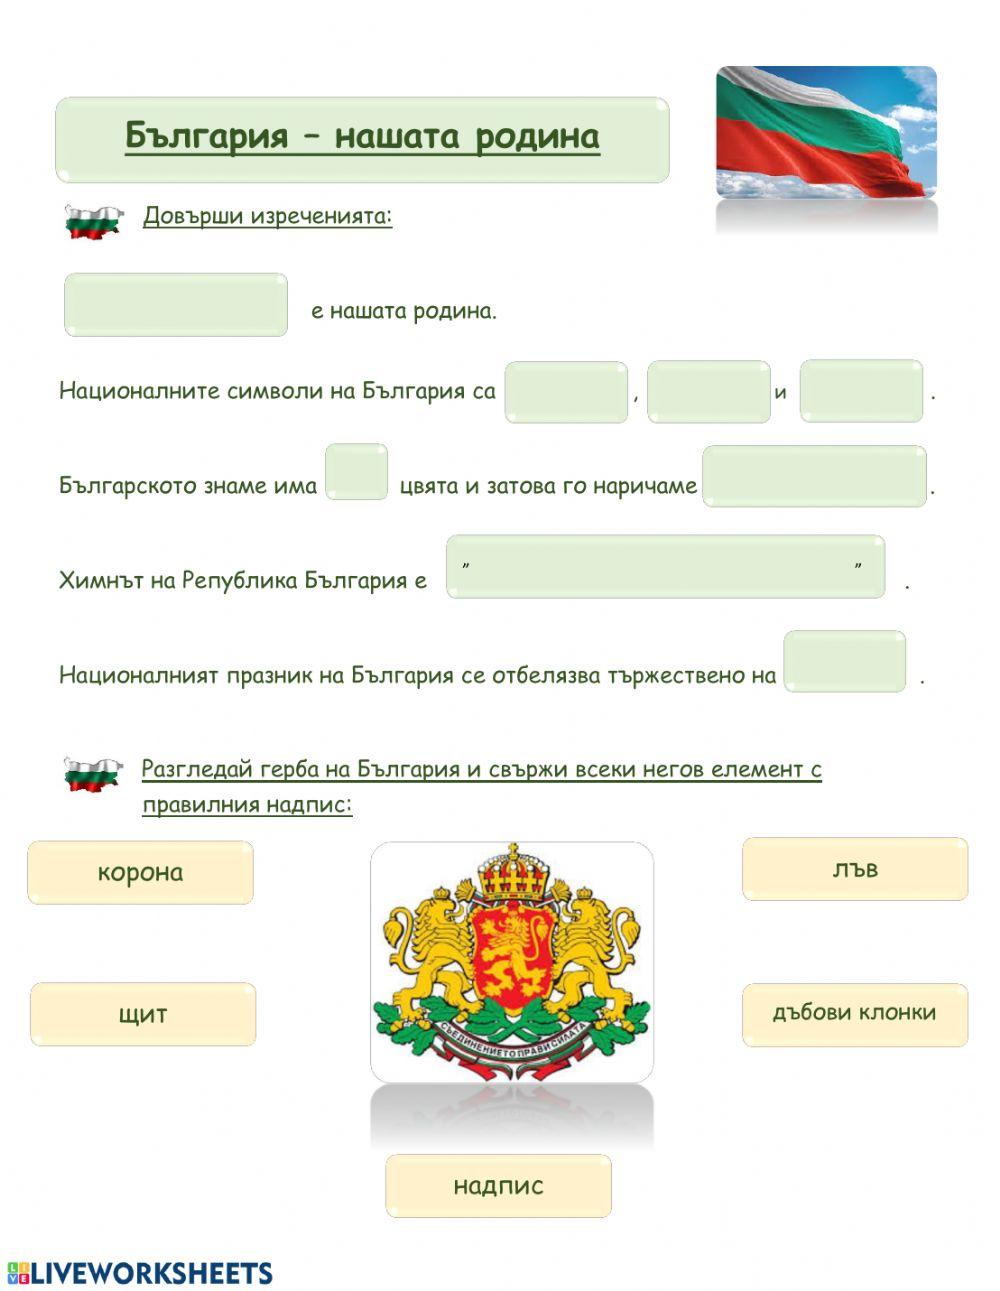 България - нашата родина